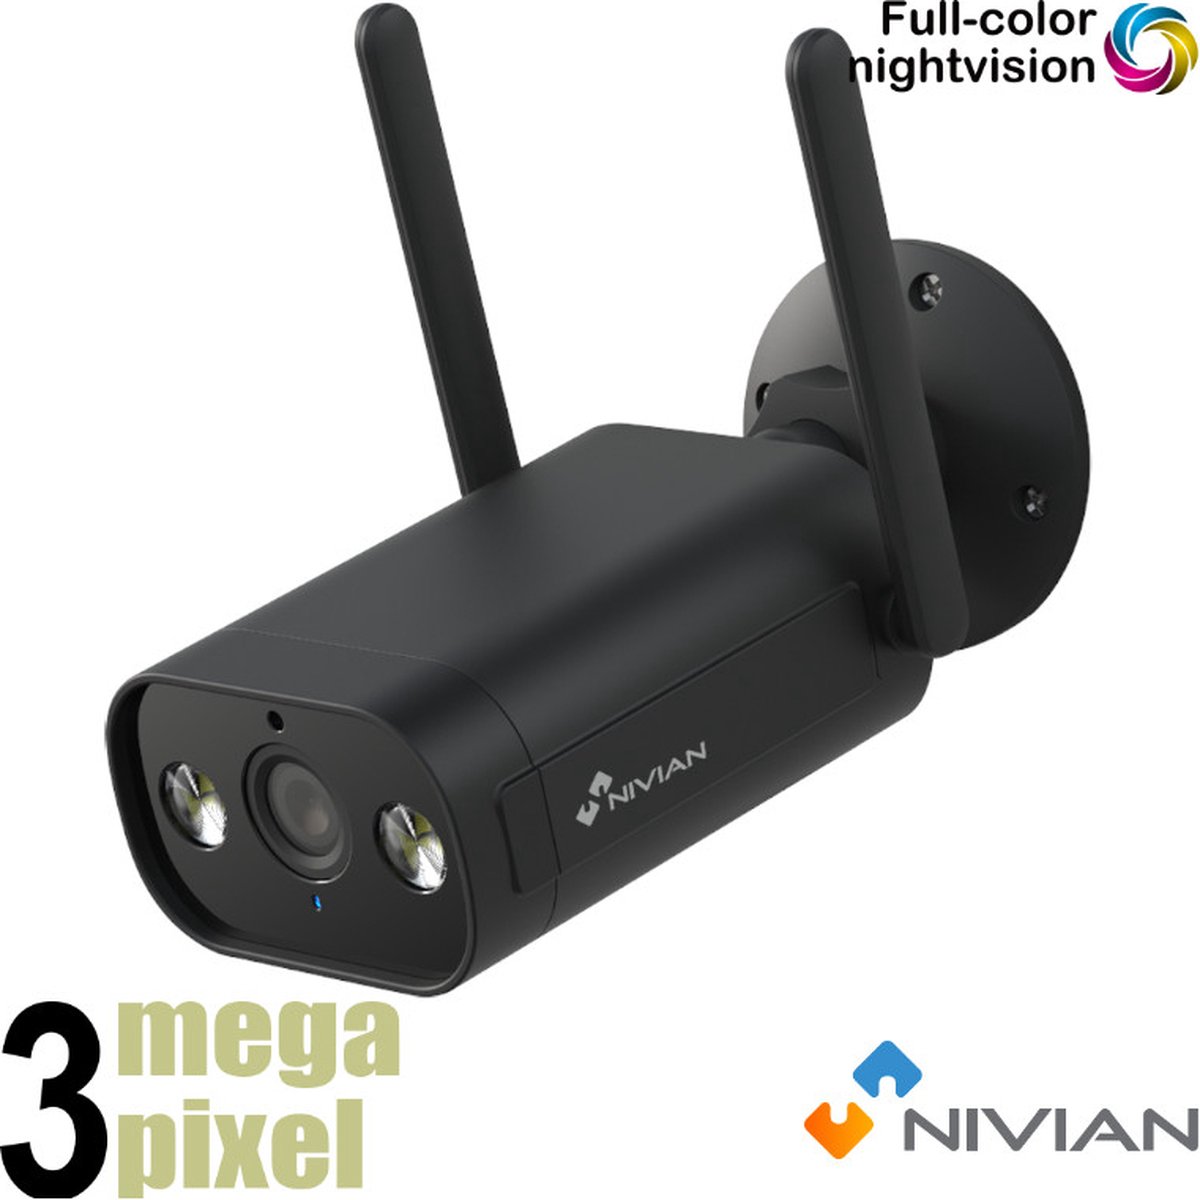 Nivian Beveiligingscamera - Wifi Camera - Full Color - Vals Alarm Filter - Microfoon & Speaker - SD-kaart Slot - Binnen & Buiten Camera